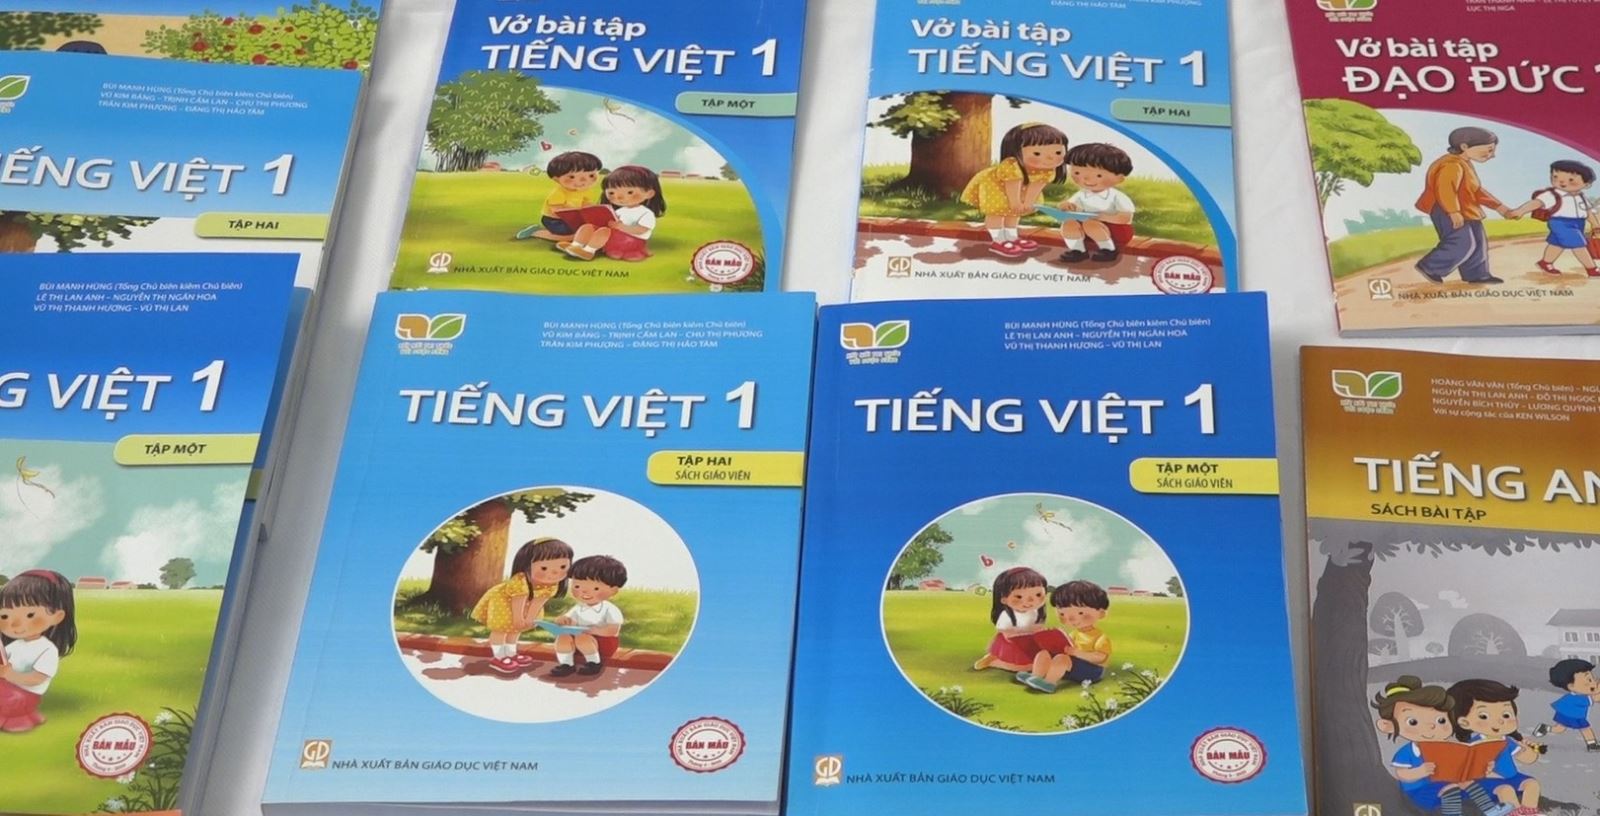 Điểm khác biệt giữa sách Tiếng Việt lớp 1 mới so với sách giáo khoa hiện hành